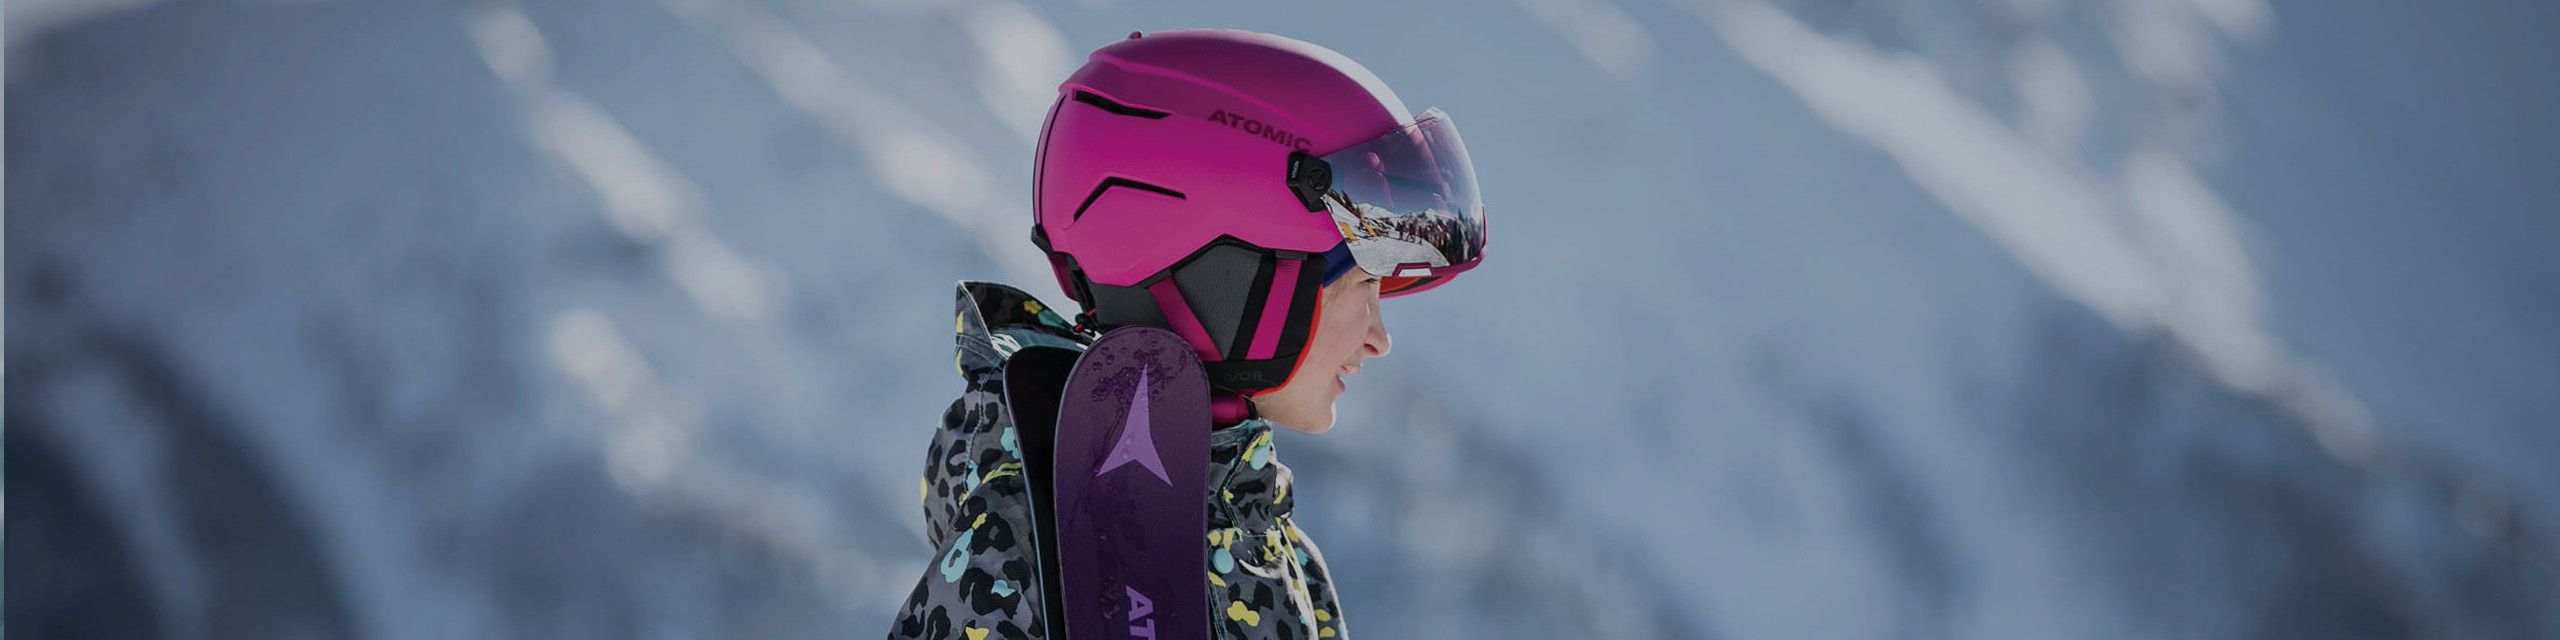 Ski Helmet with visor for kids